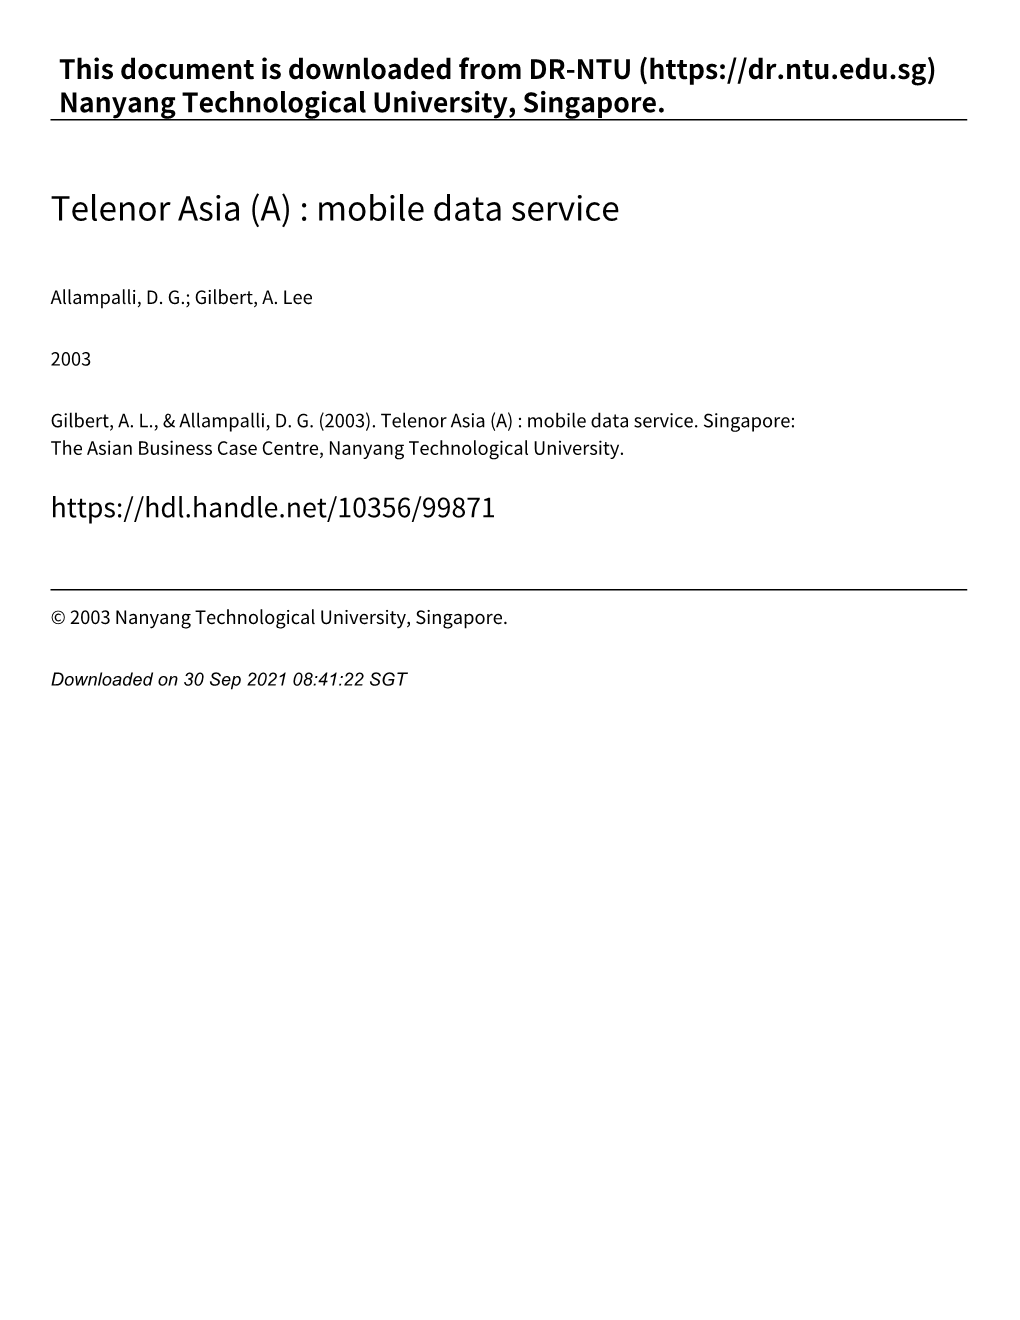 Telenor Asia (A) : Mobile Data Service